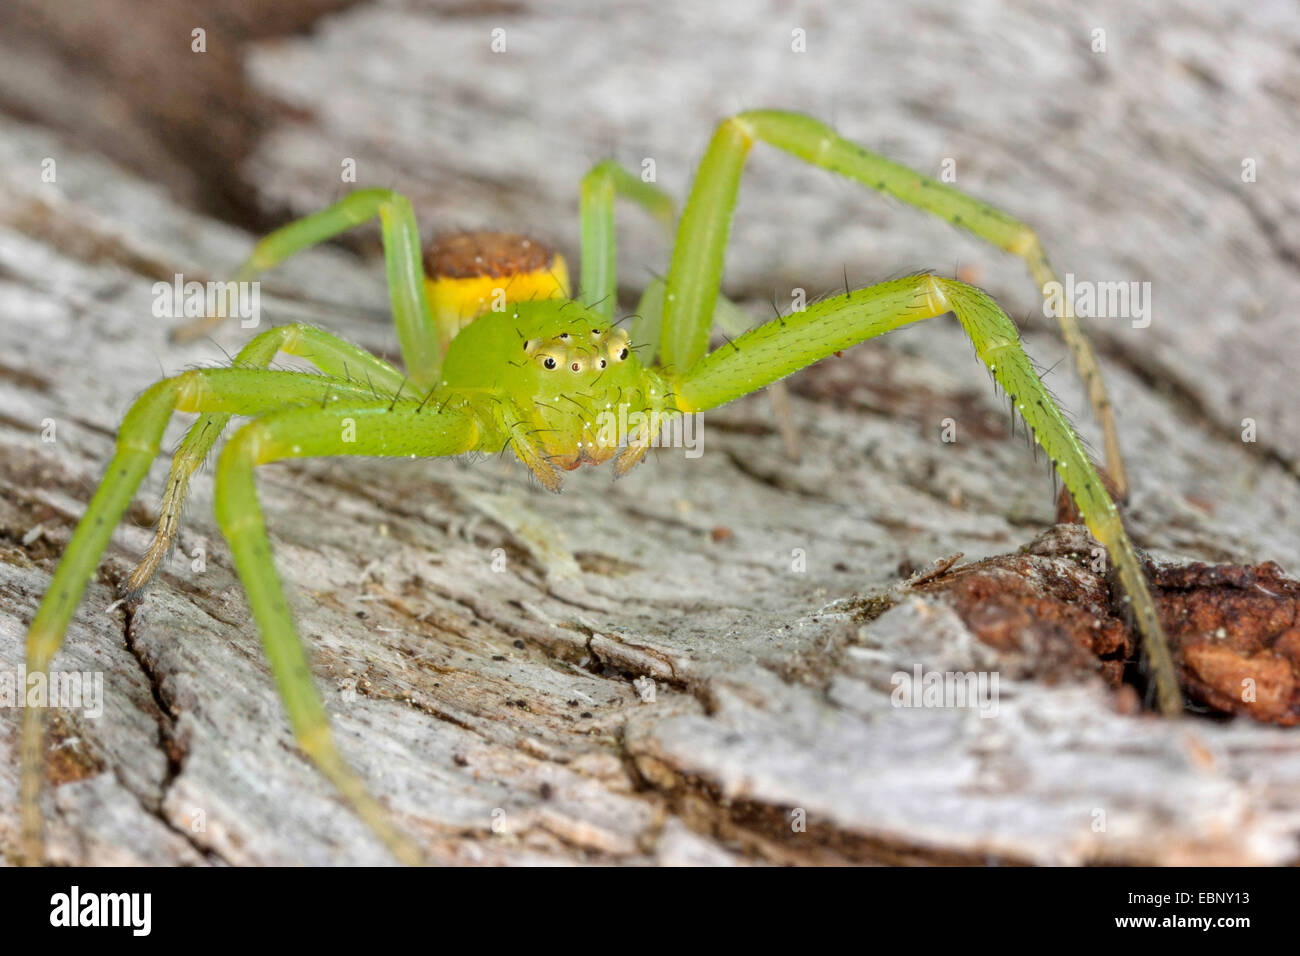 Araignée crabe vert, crabe araignée (Diaea dorsata), sur bois, Allemagne Banque D'Images